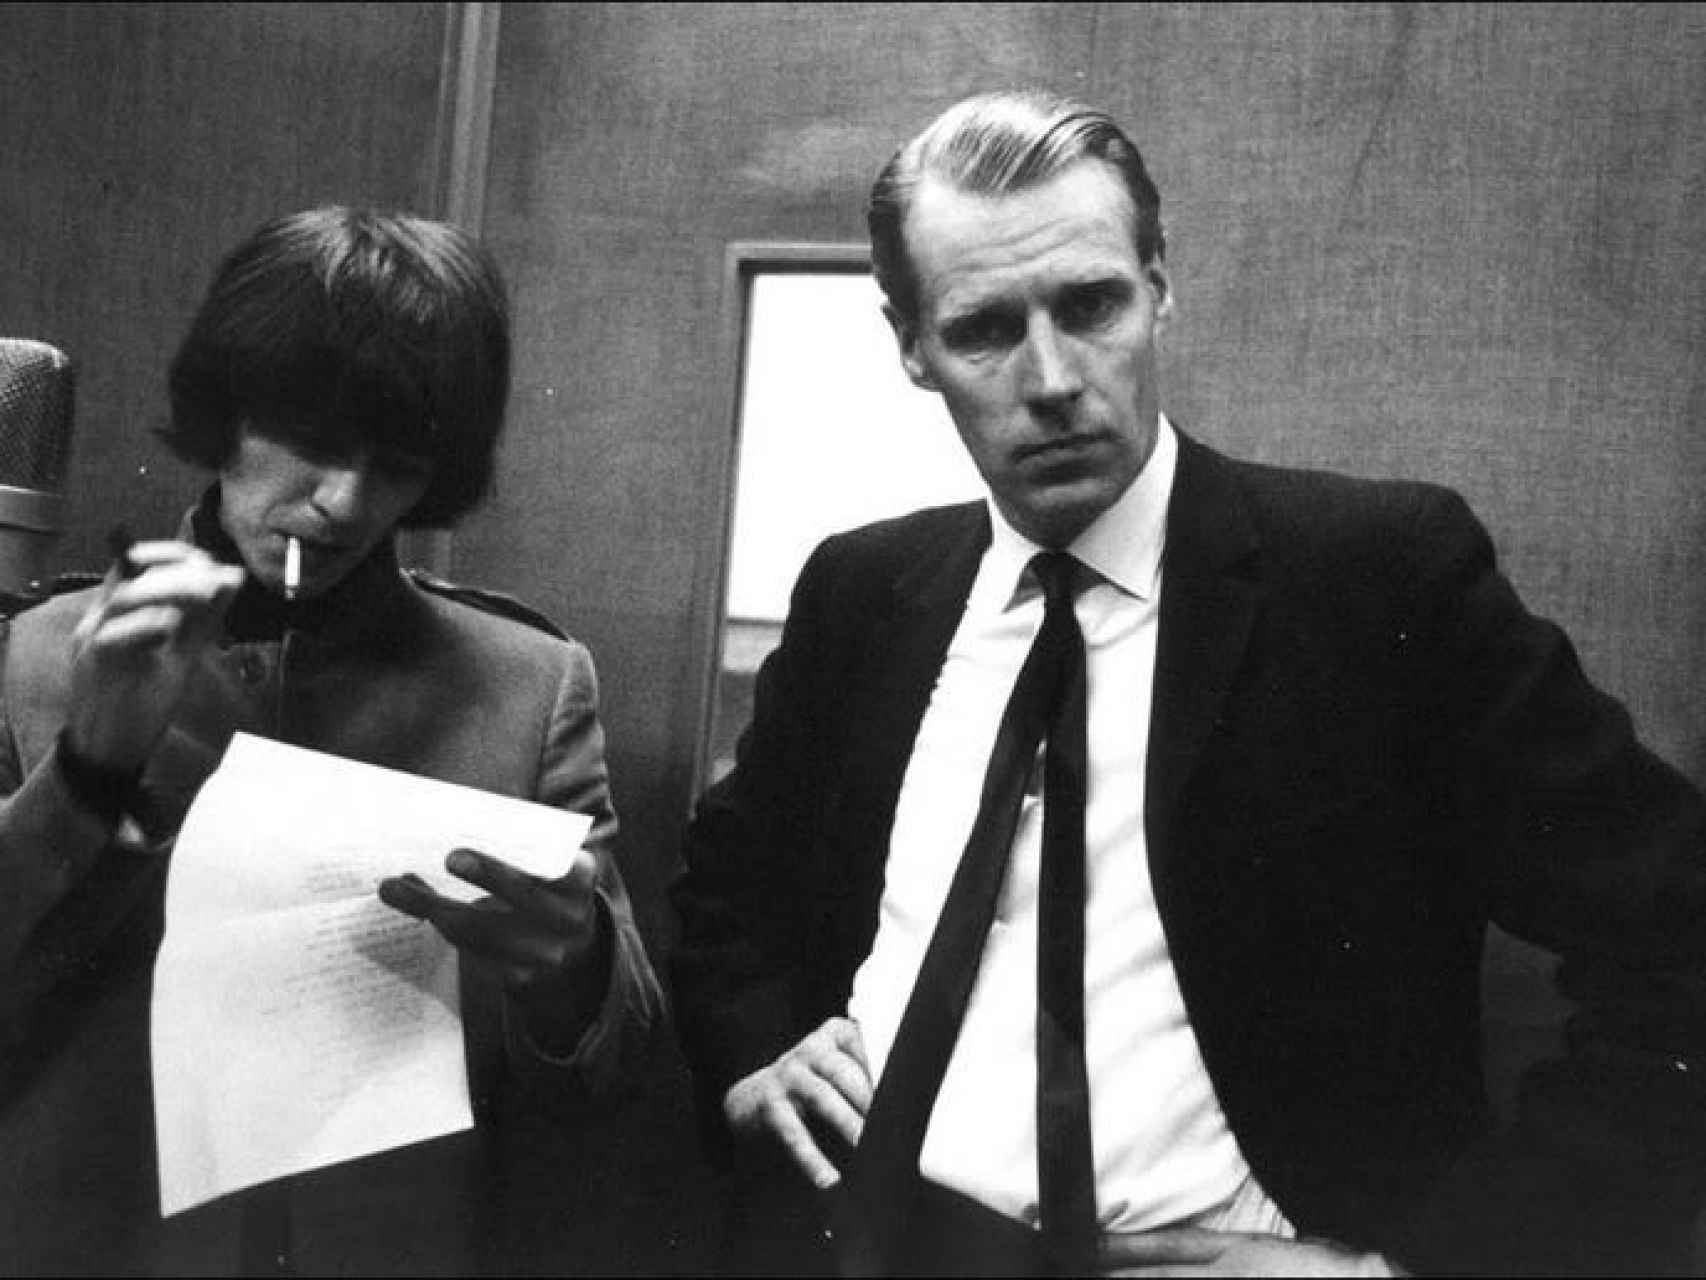 El músico George Harrison y el productor George Martin, llamado el quinto beatle